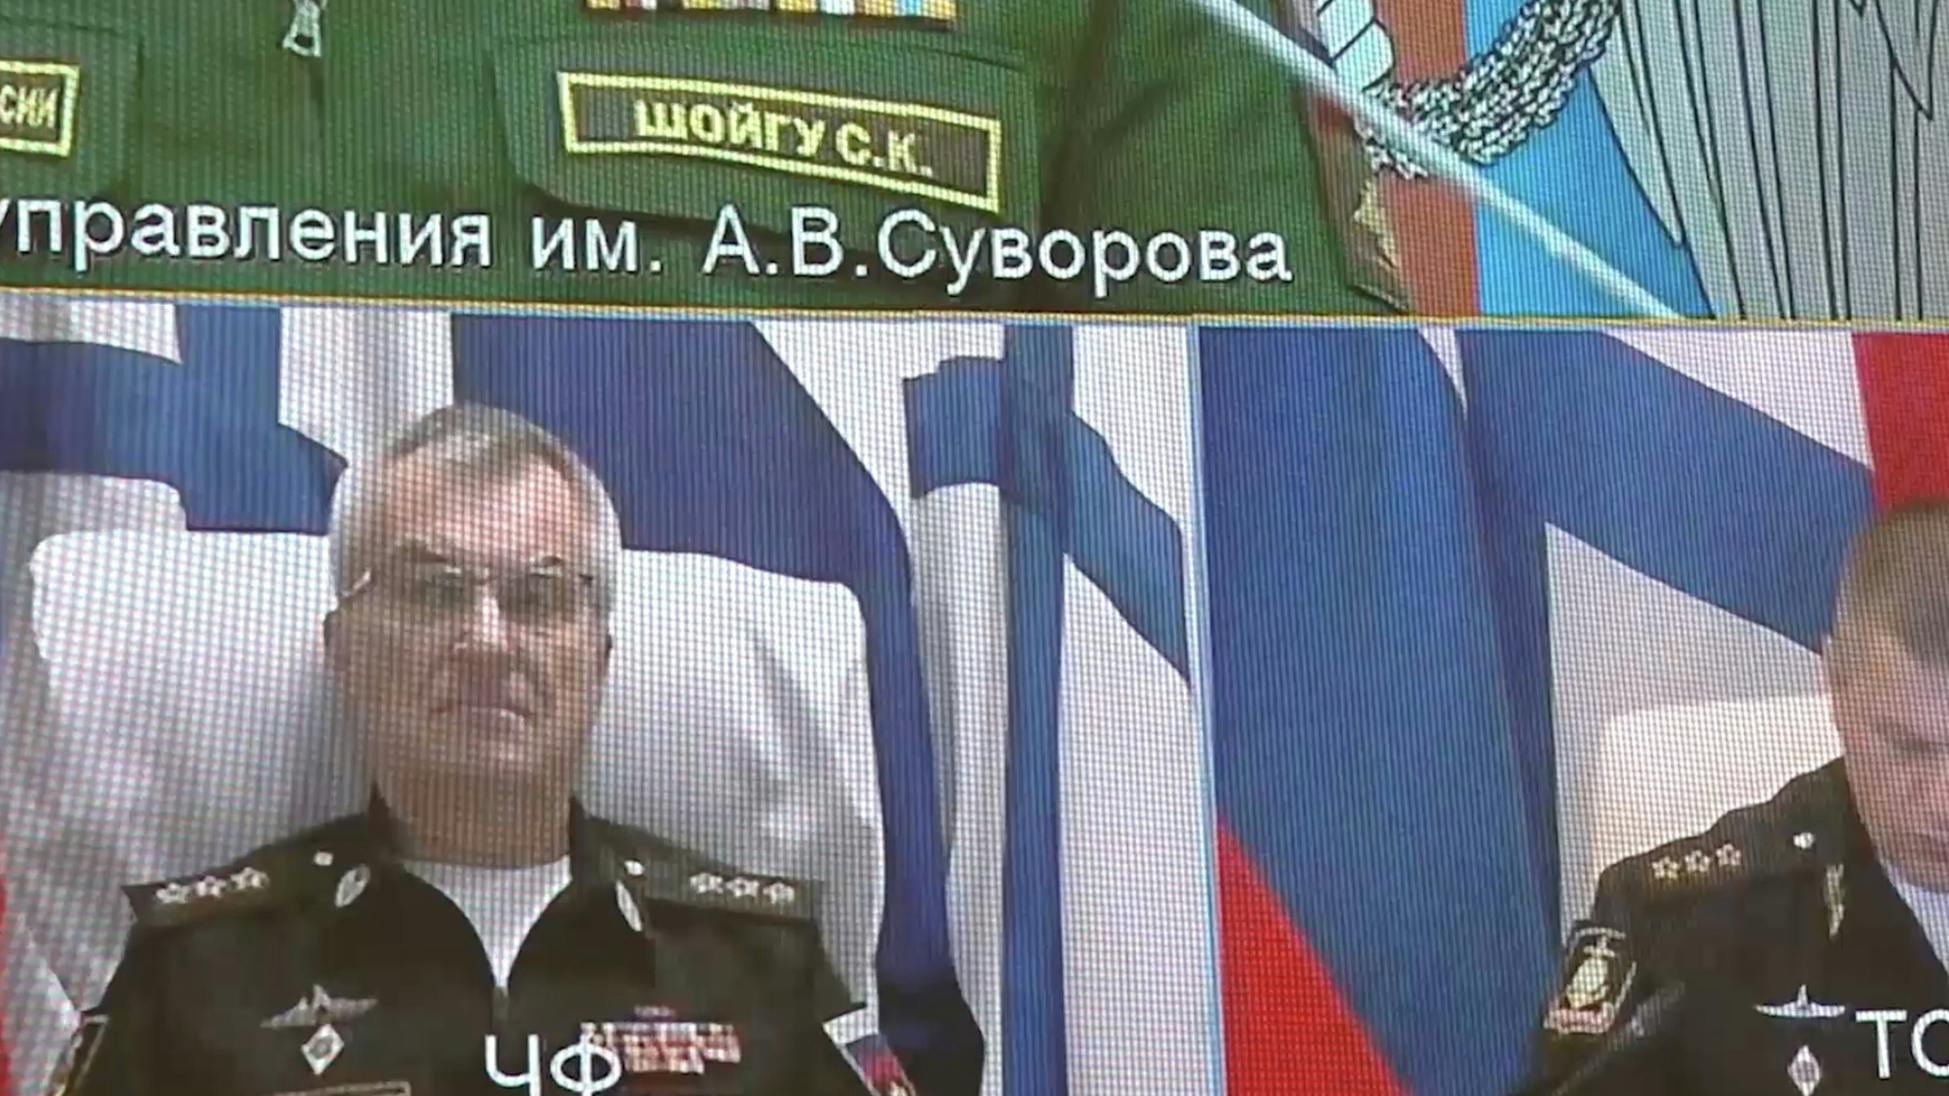 'Kwestie rond dood Sokolov is vooral campagnekoe'